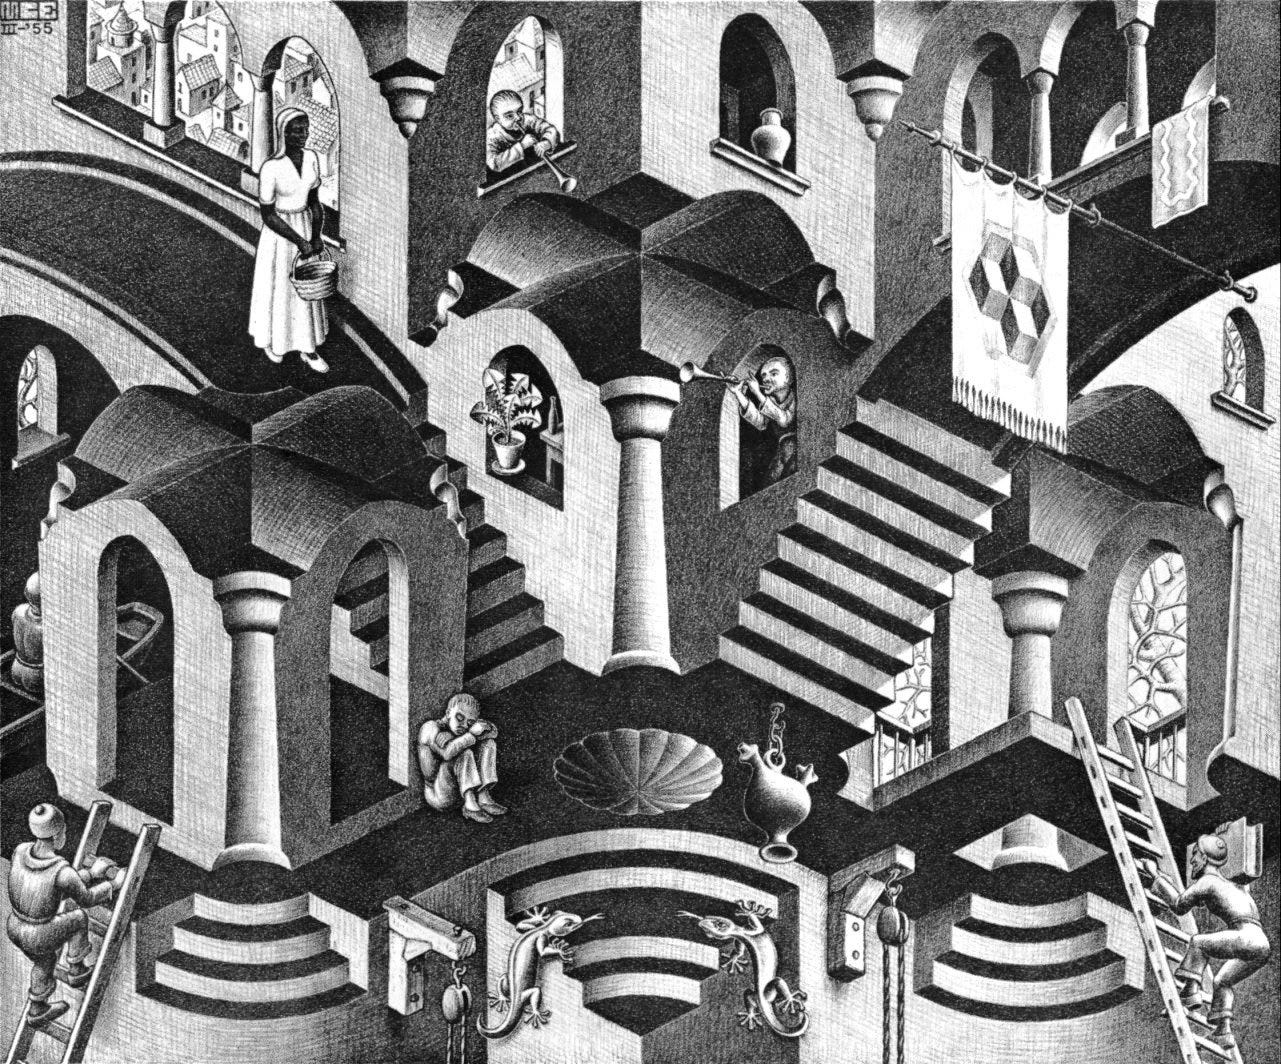 Le opere di Escher a Milano - NonSoloCinema